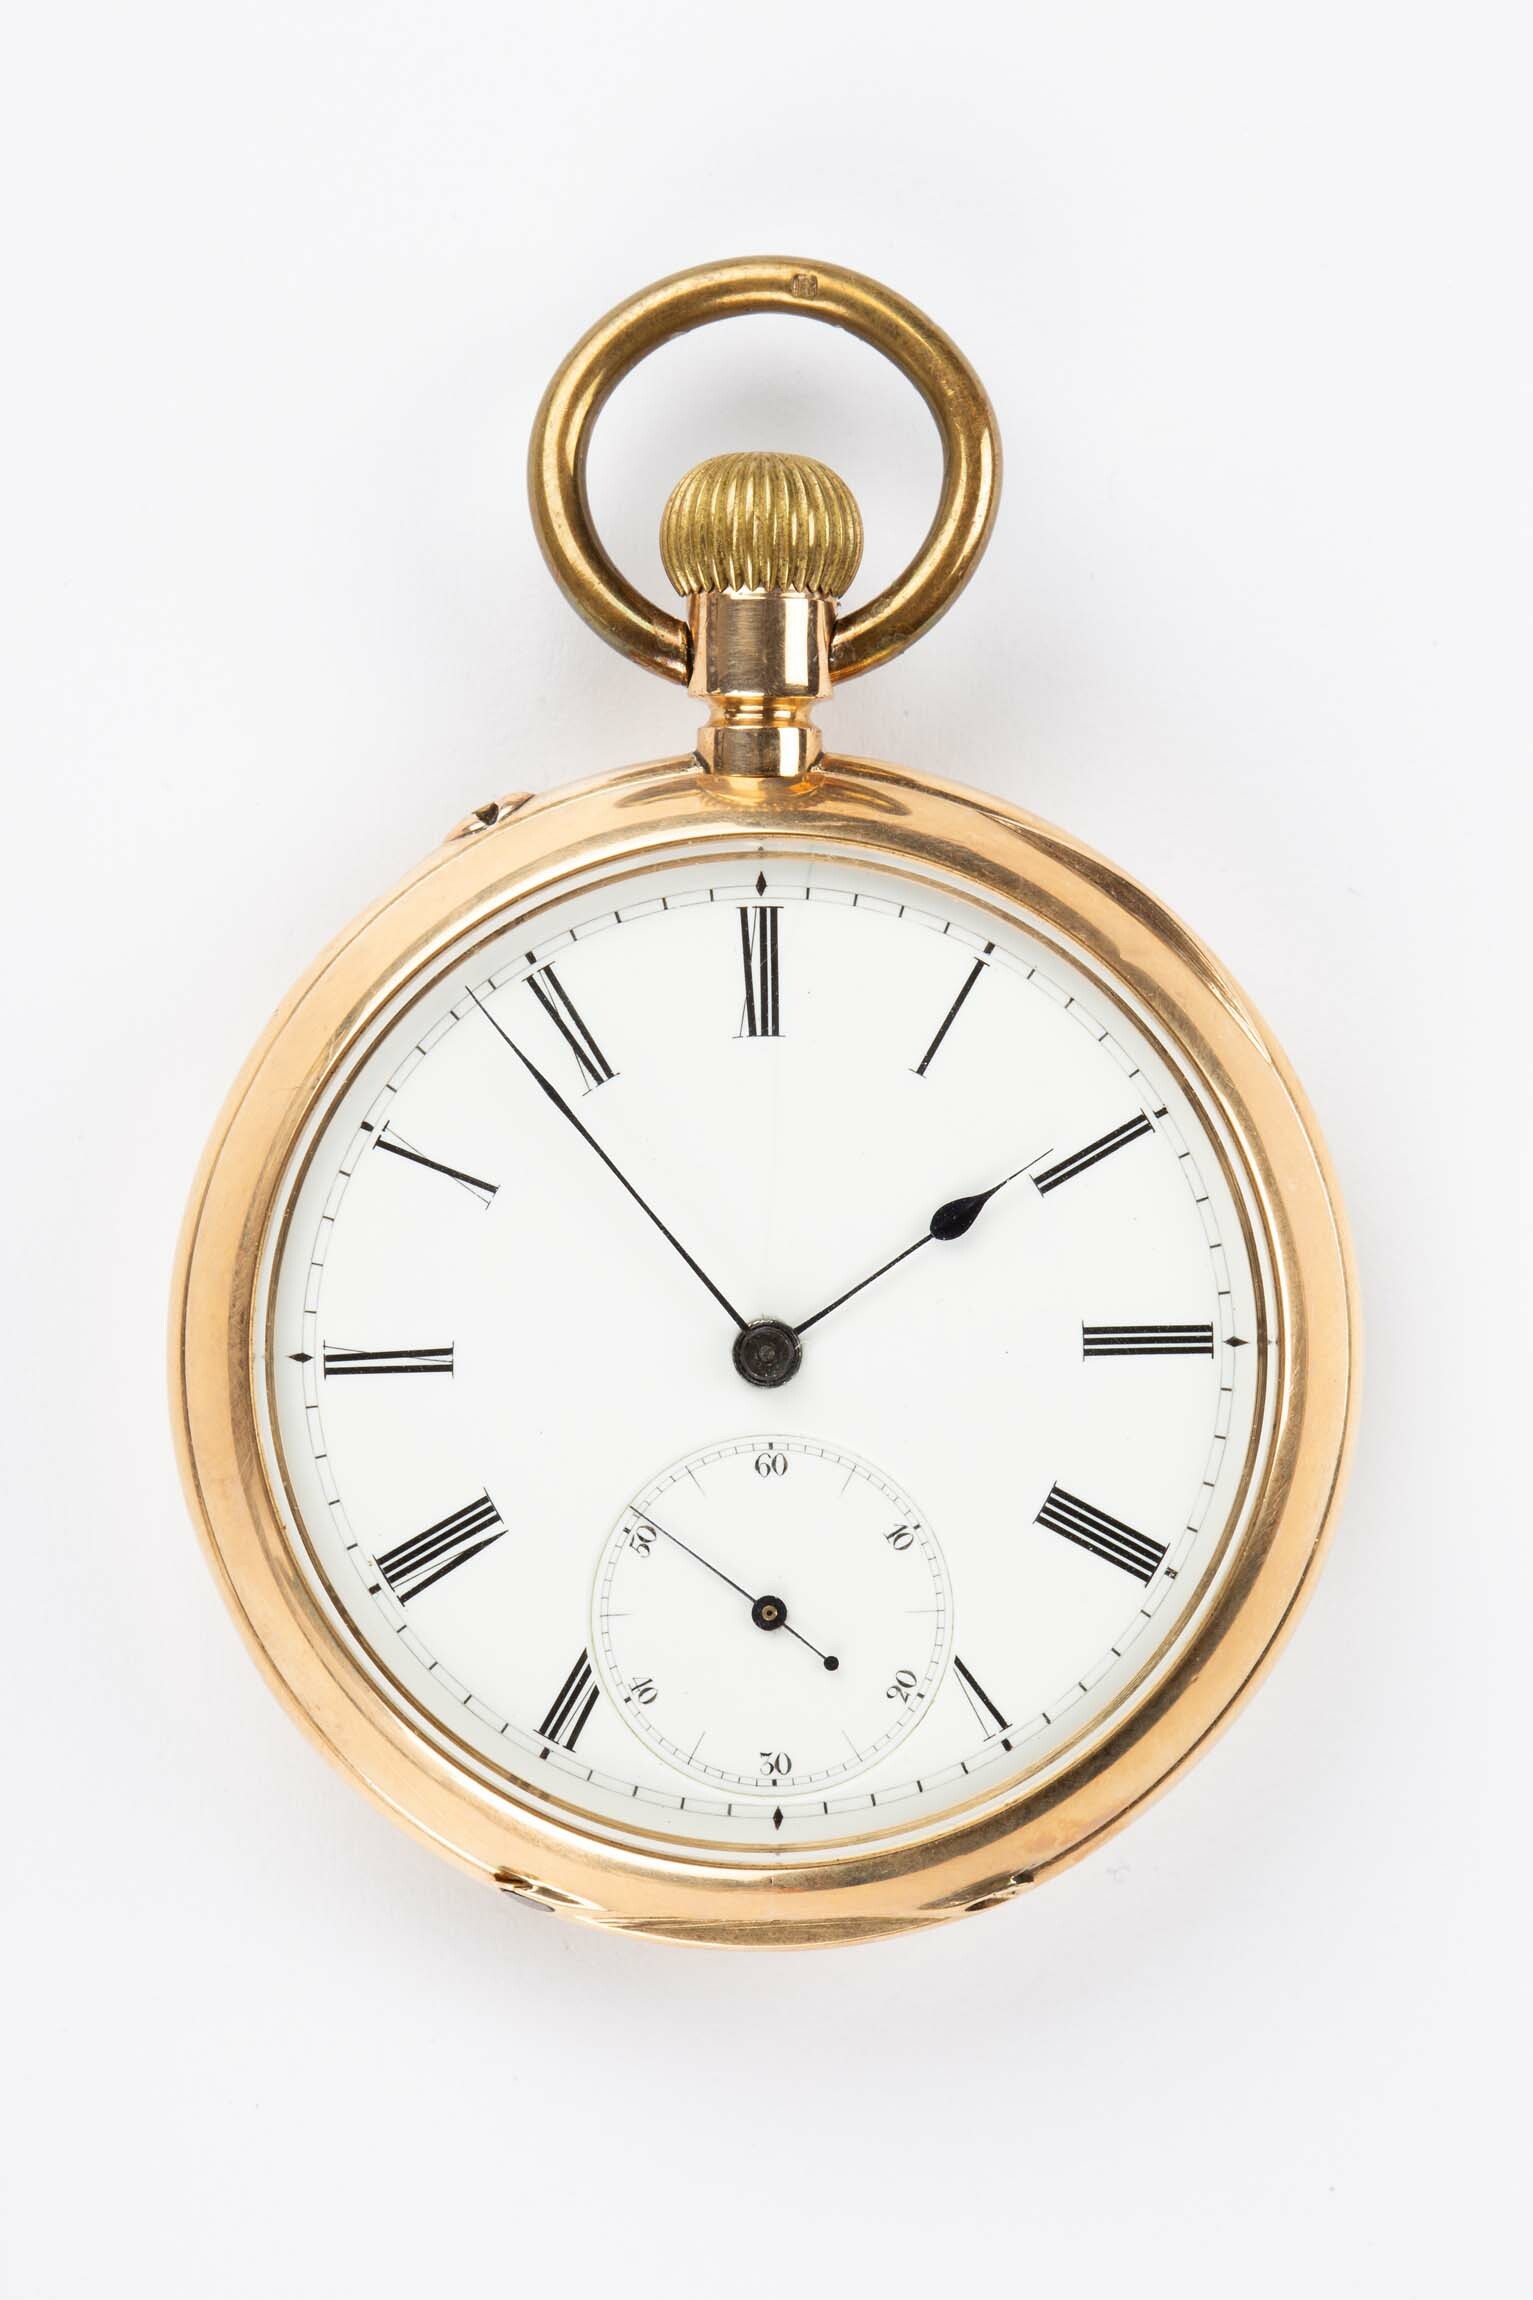 Taschenuhr, Deutsche Uhrenfabrikation Glashütte, um 1900 (Deutsches Uhrenmuseum CC BY-SA)